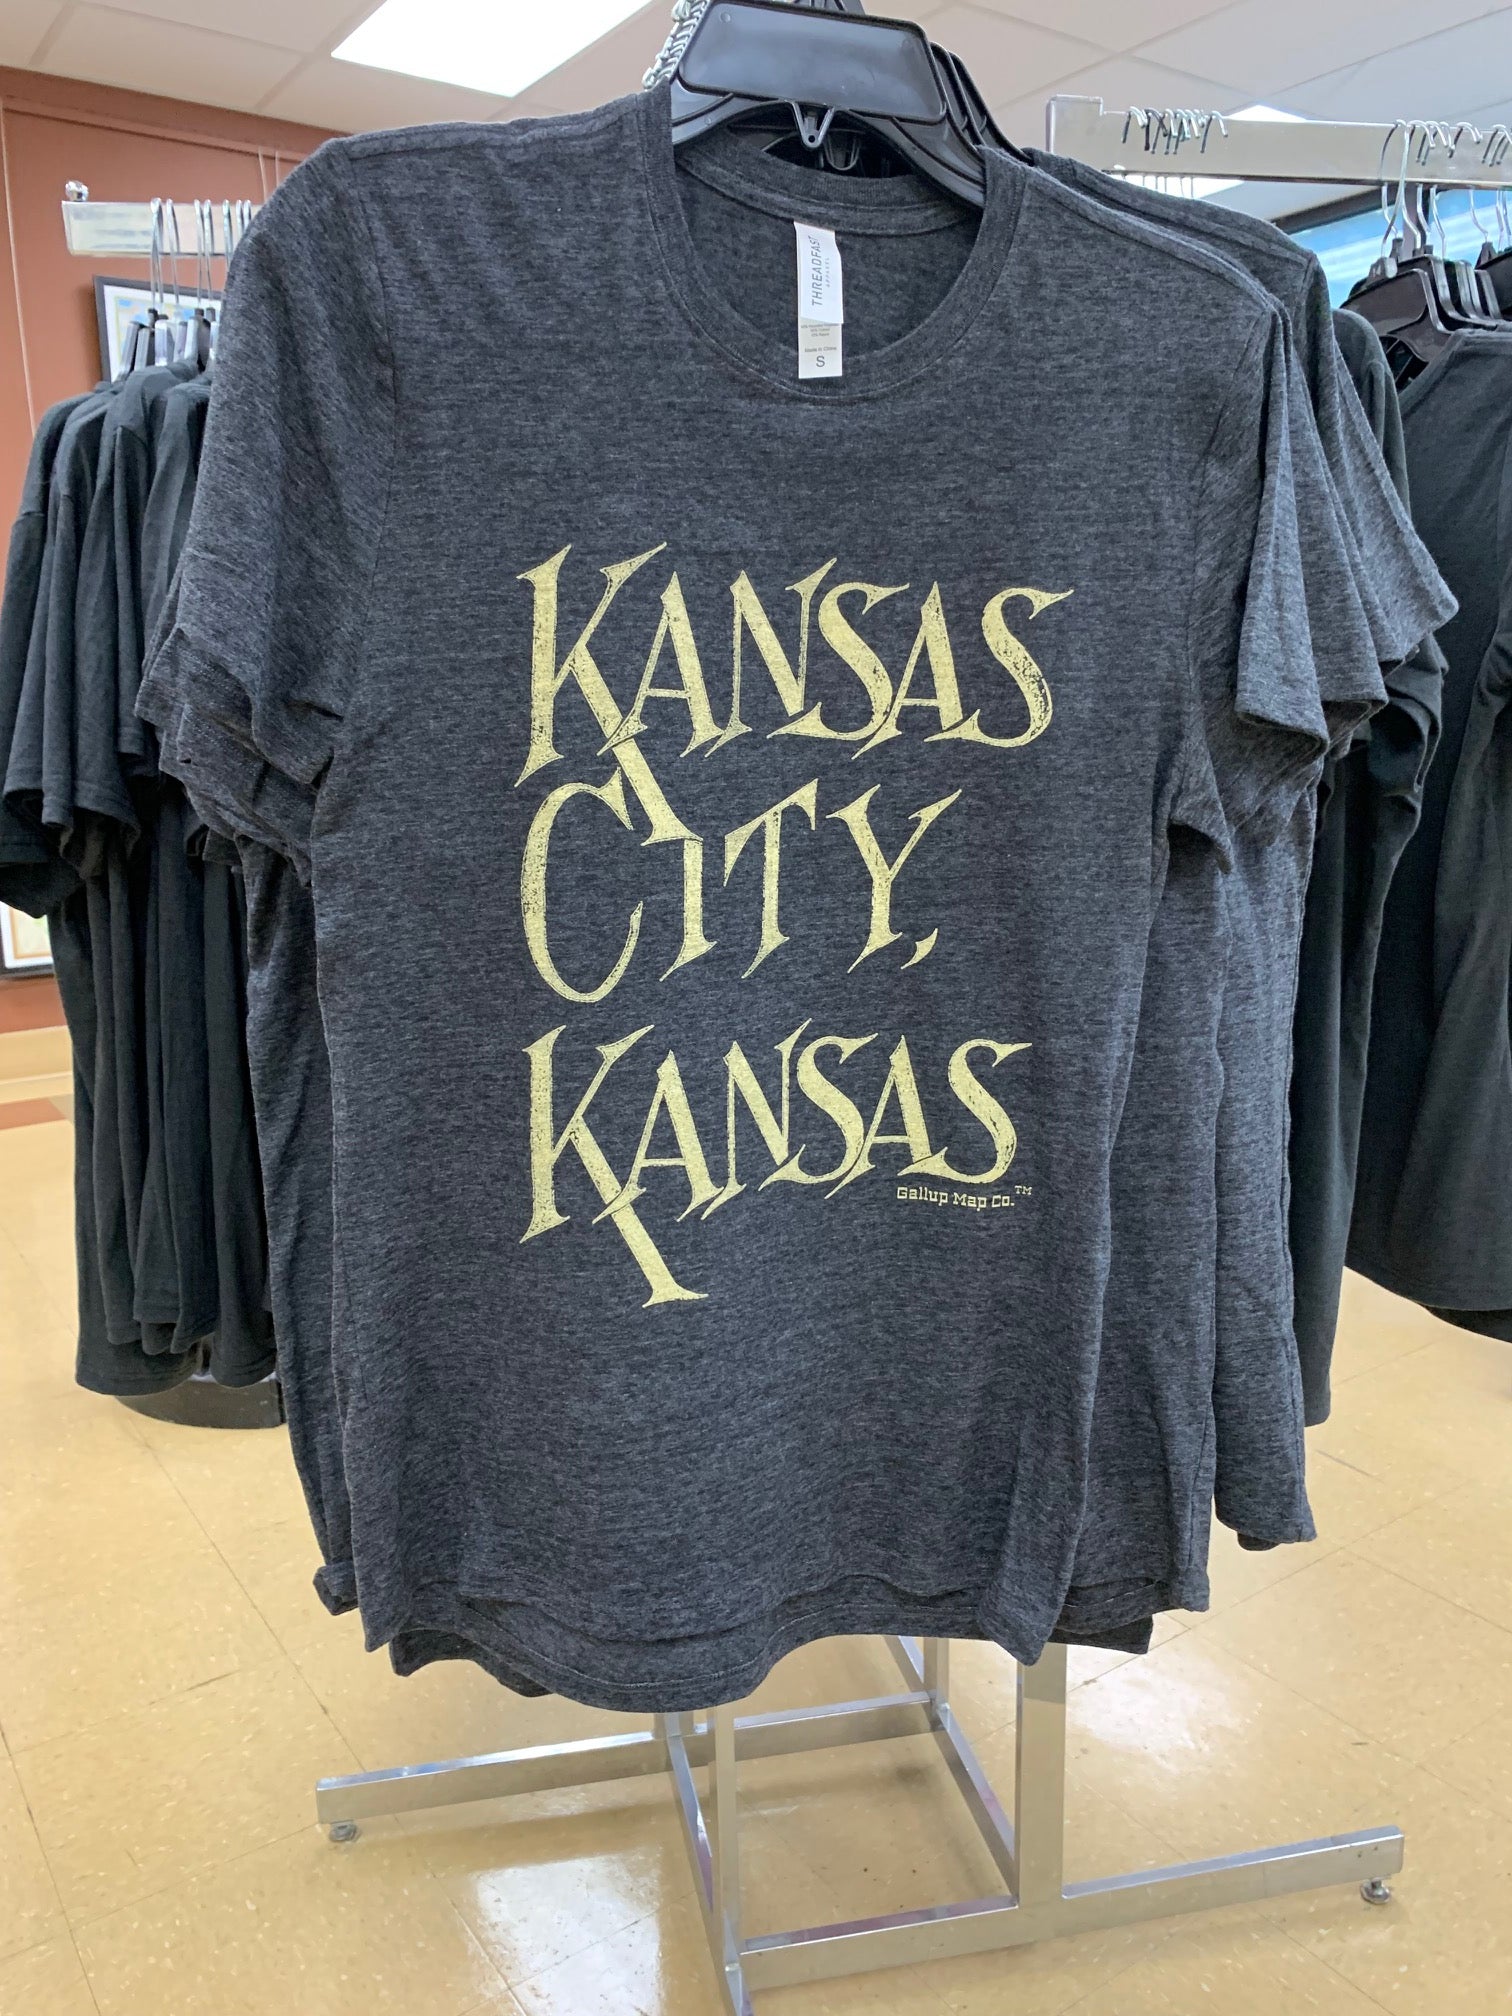 Kansas City Kansas T-Shirt